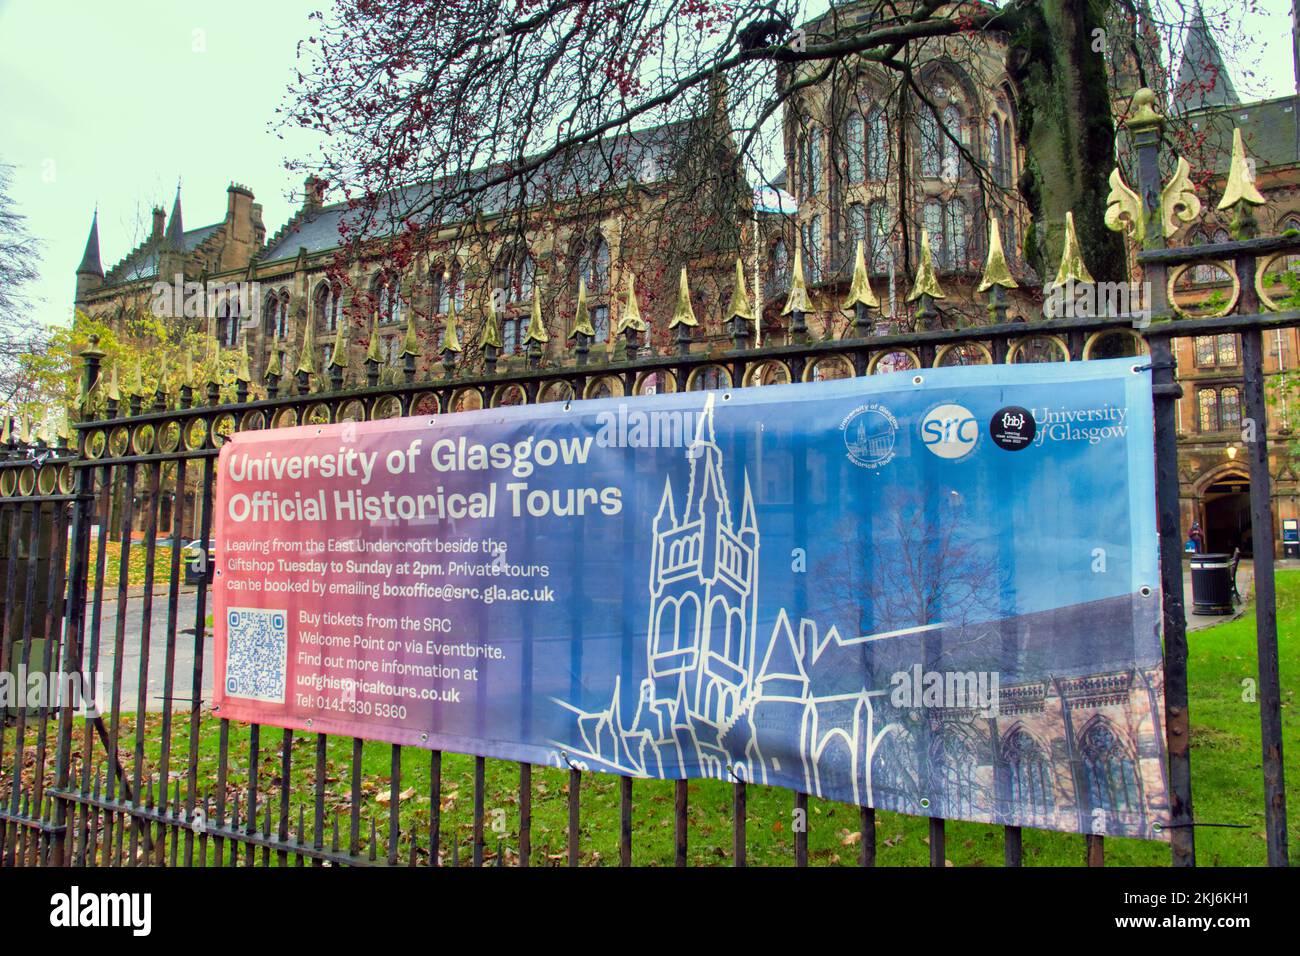 La universidad de Glasgow muestra visitas históricas oficiales Foto de stock